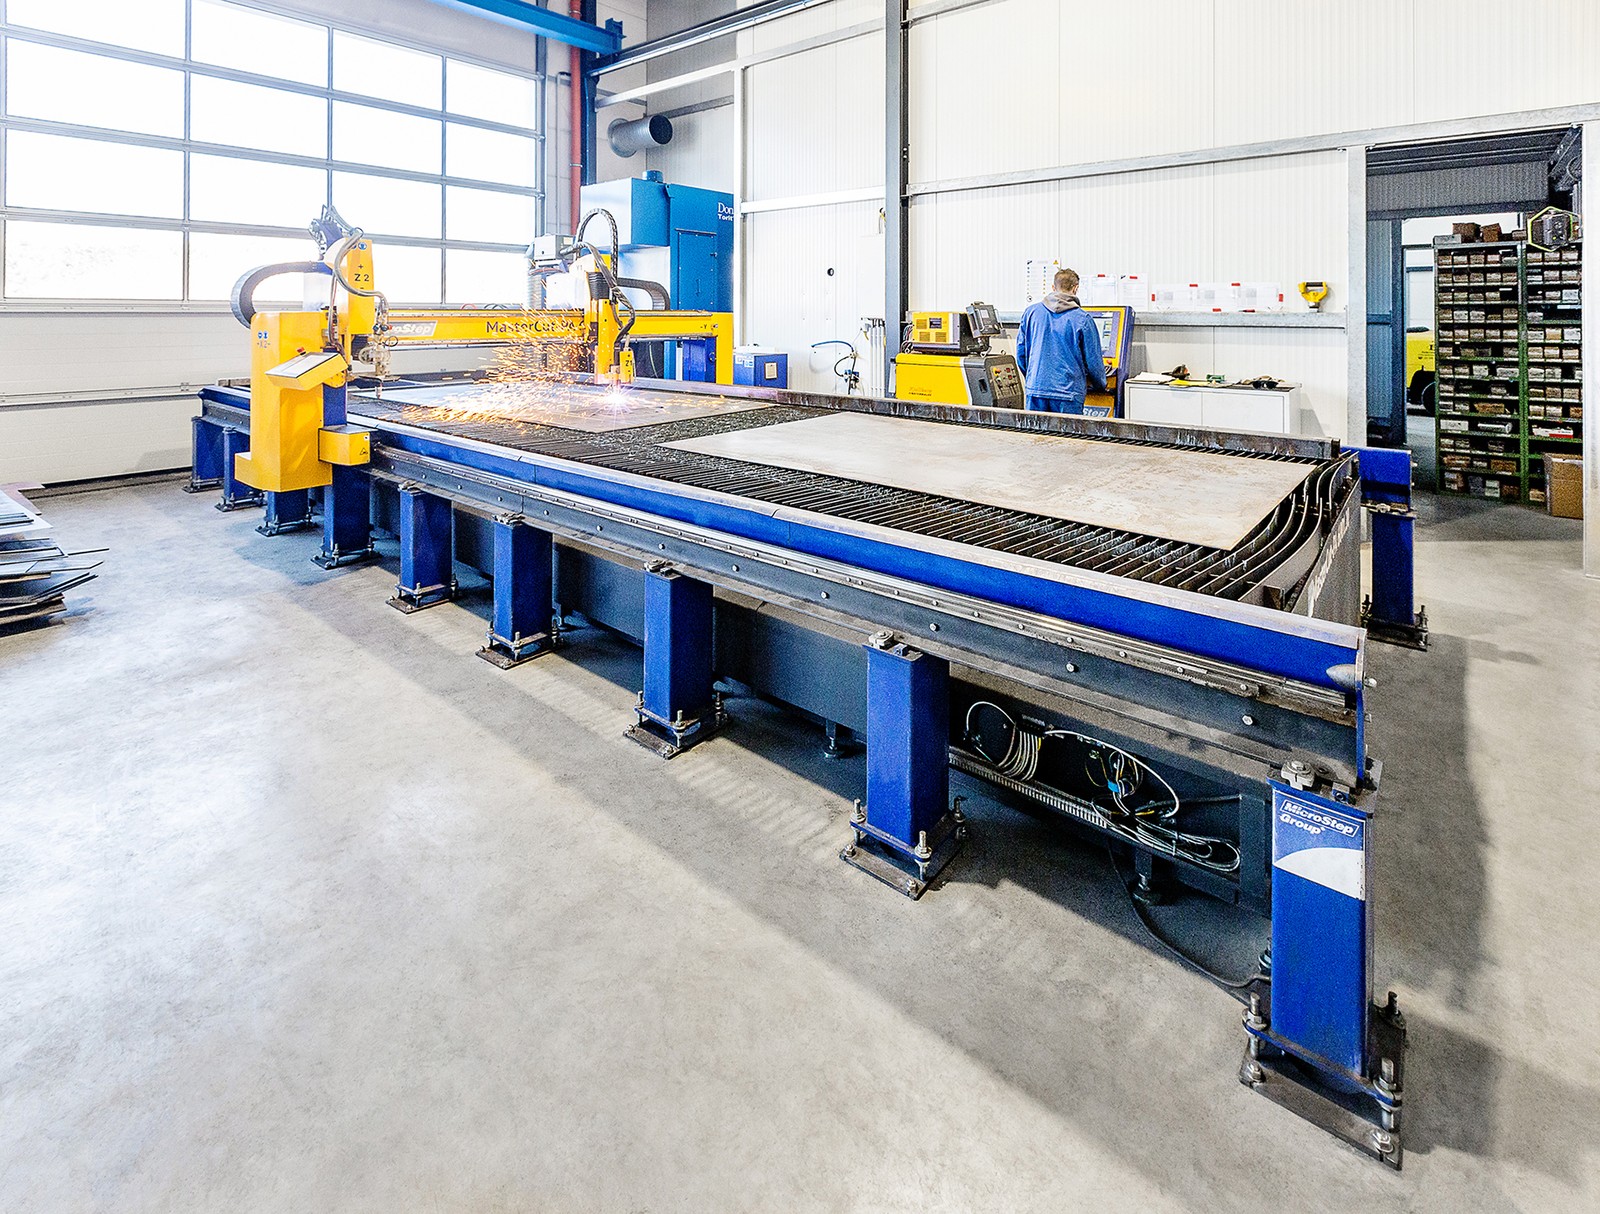 Die Alois Auer GmbH schaffte sich eine sechs Jahre alte Schneidanlage der Mastercut-Baureihe an. Auf einer Bearbeitungsfläche von 6.000 x 2.000 mm kann der Schlosser- und Stahlbaubetrieb unterschiedliche Materialien und Stärken präzise bearbeiten.  